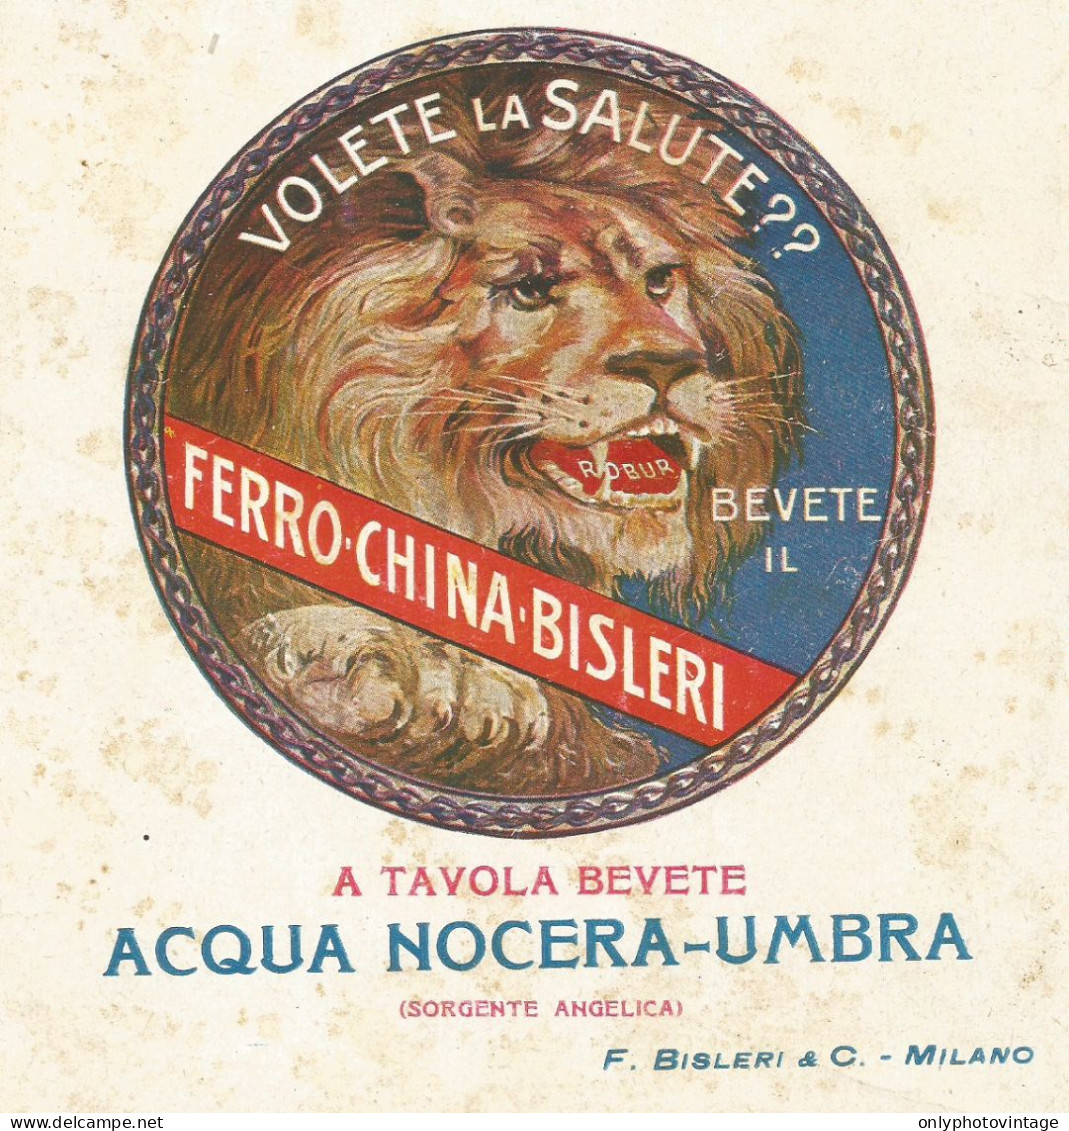 Ferro China BISLERI - Pubblicità 1927 - Advertising - Publicités